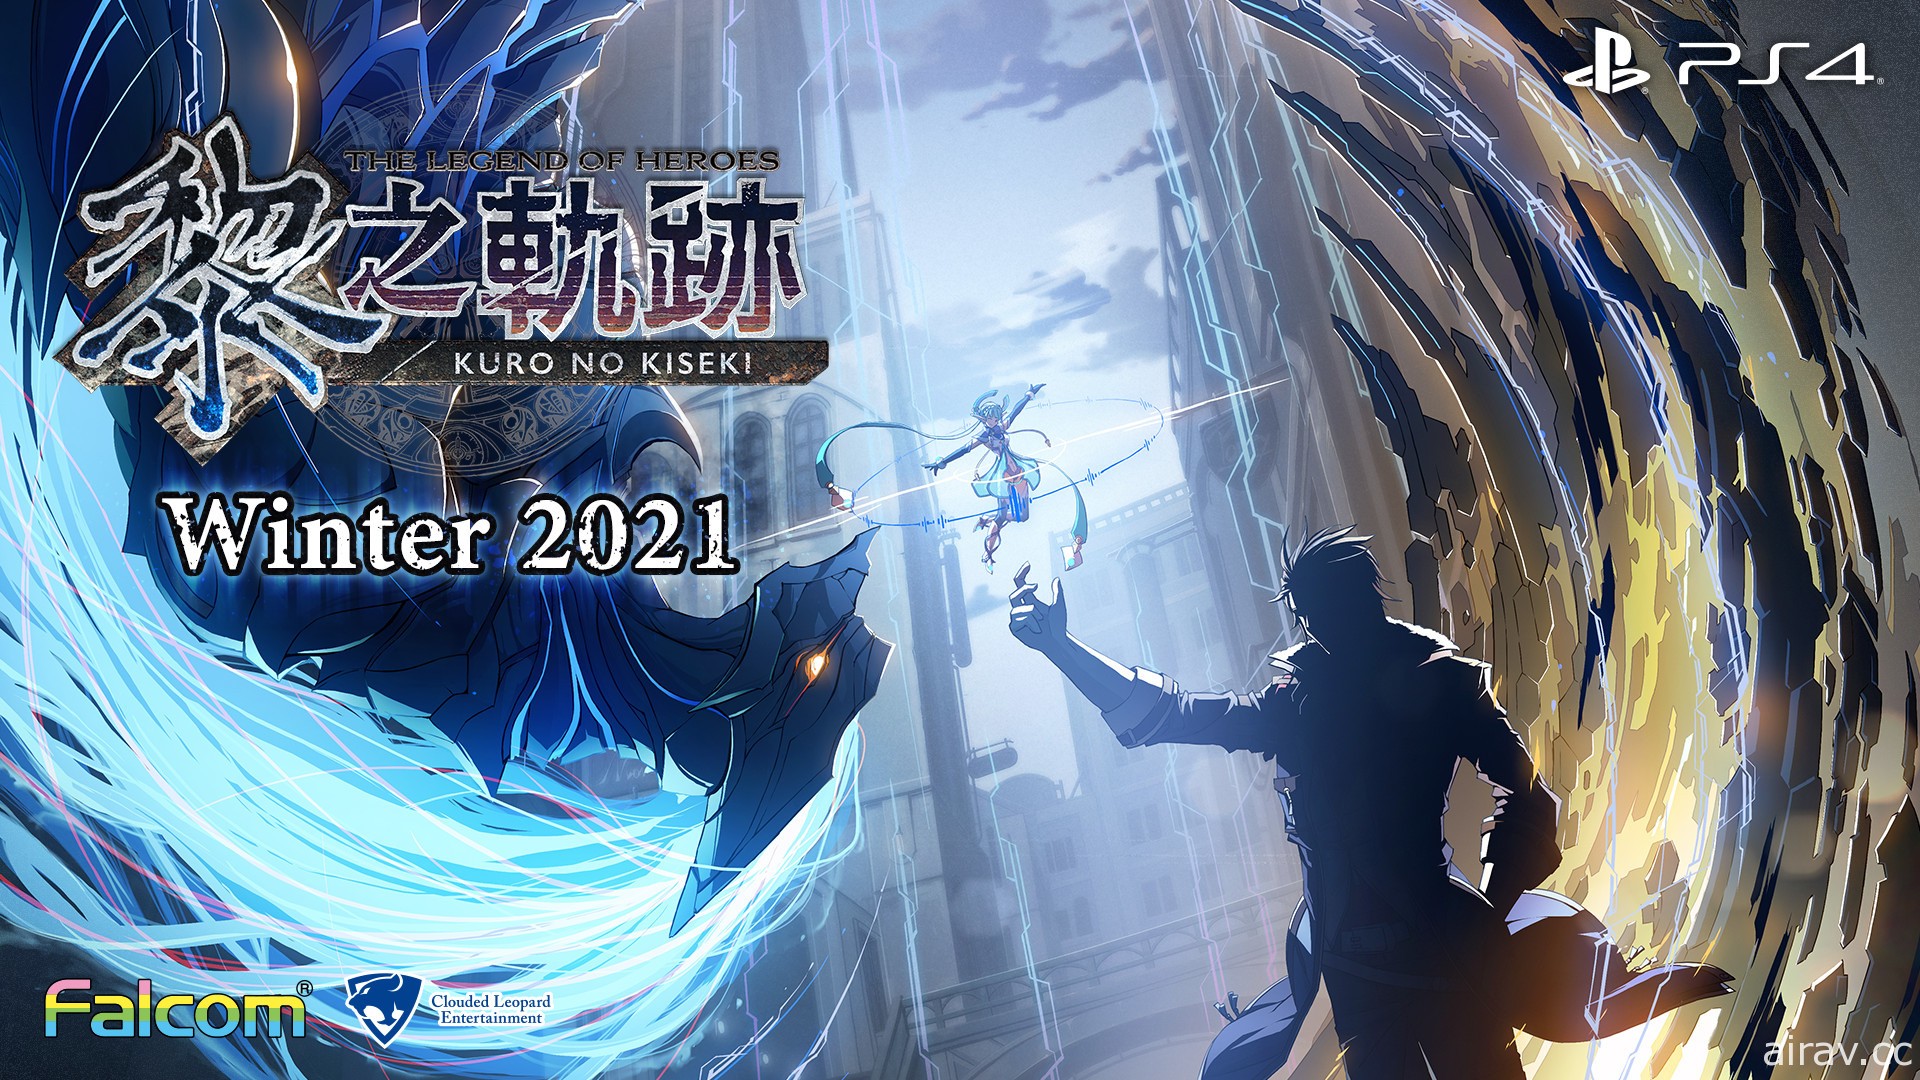 《英雄傳說 黎之軌跡》確定 2021 年冬季推出中文版 揭開《軌跡》系列後半故事序幕